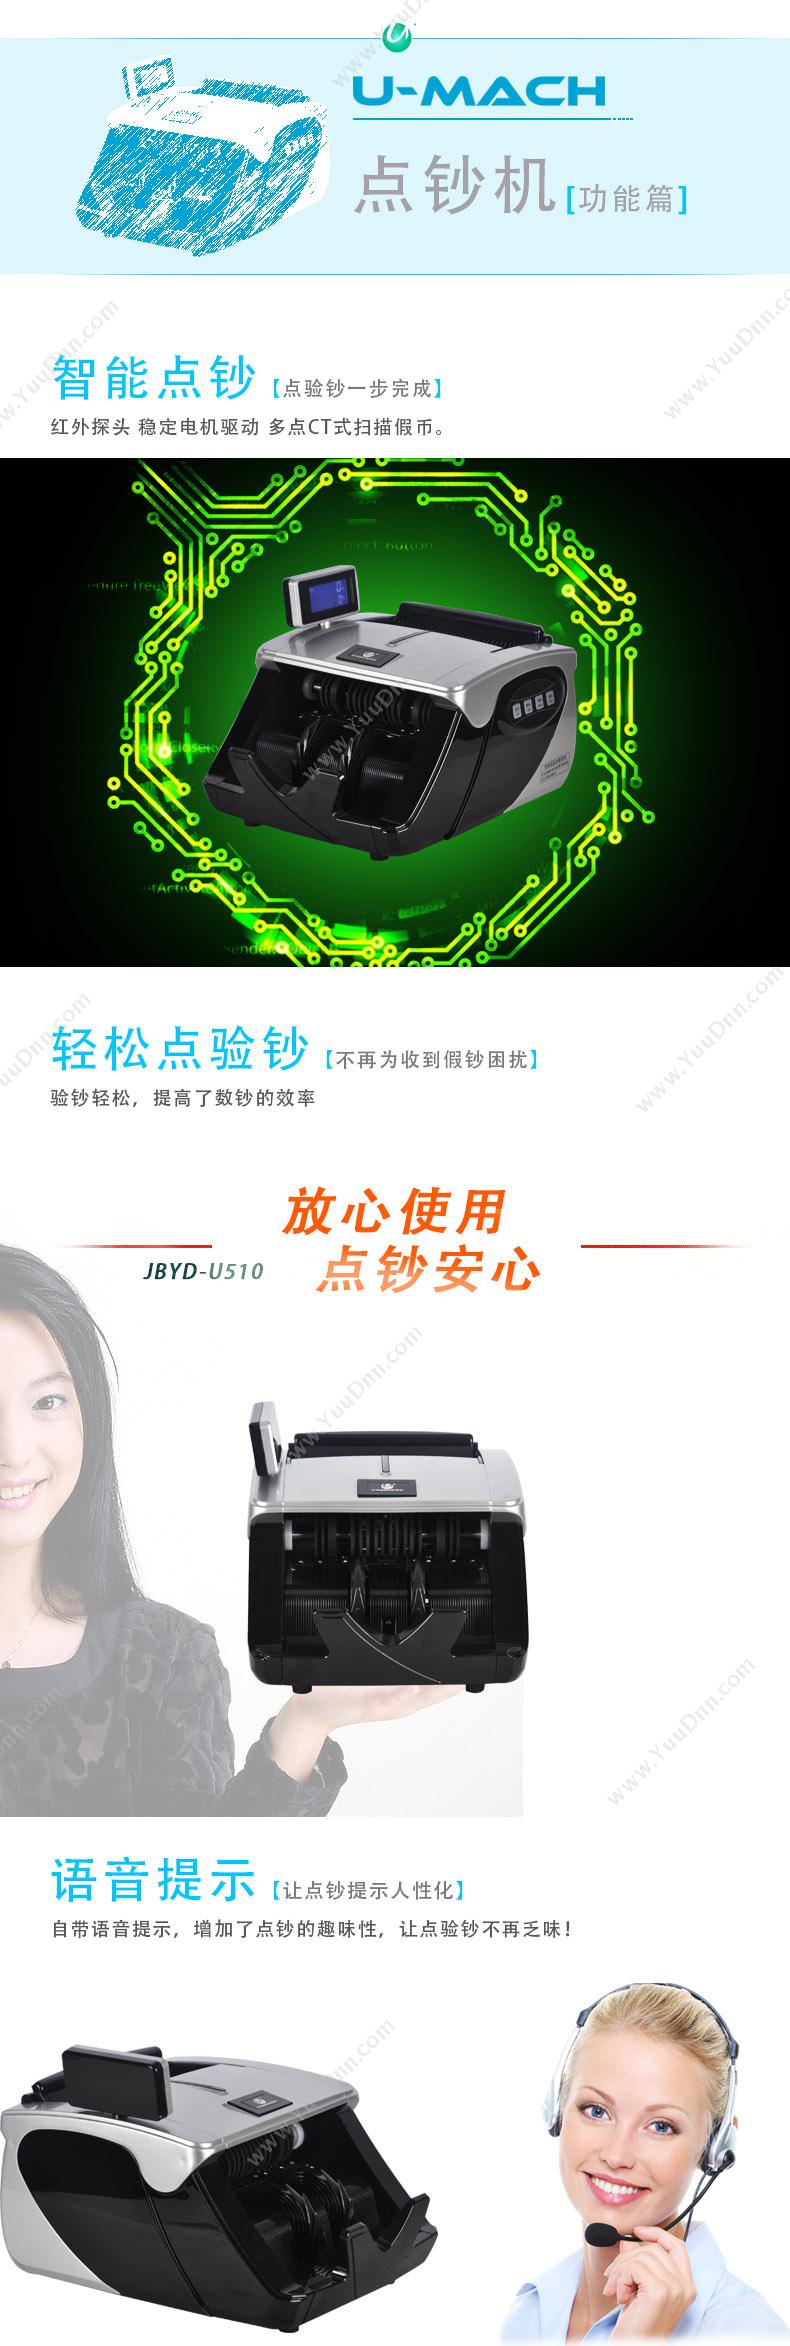 优玛仕 Umach JBYD-U510 C类点 单屏点钞机